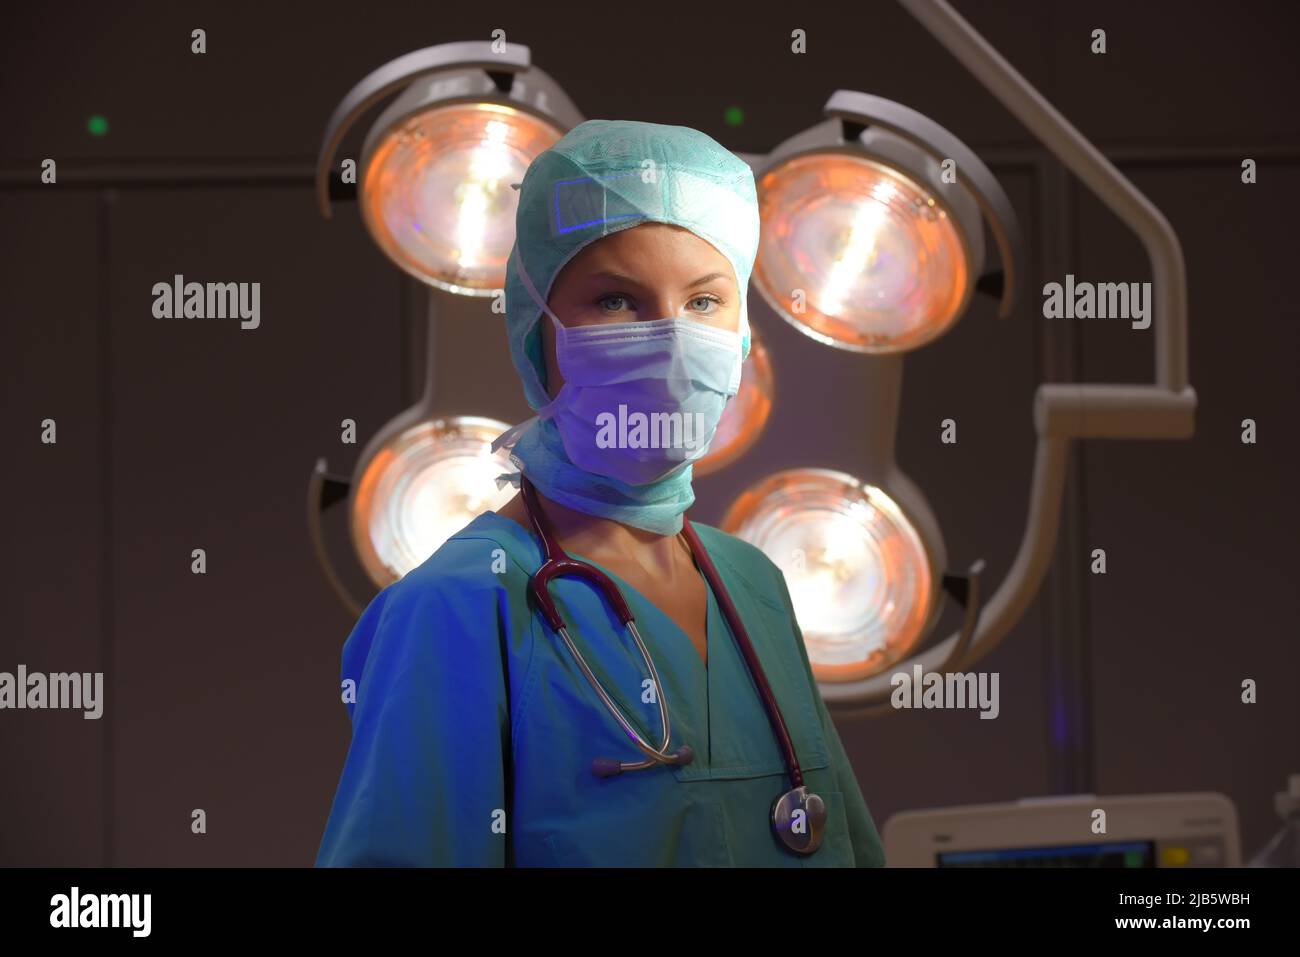 Une infirmière de théâtre d'anesthésie est vue dans un théâtre d'opération. Elle est vue vêtue de vêtements médicaux verts stériles avec un masque facial sur son visage. Banque D'Images